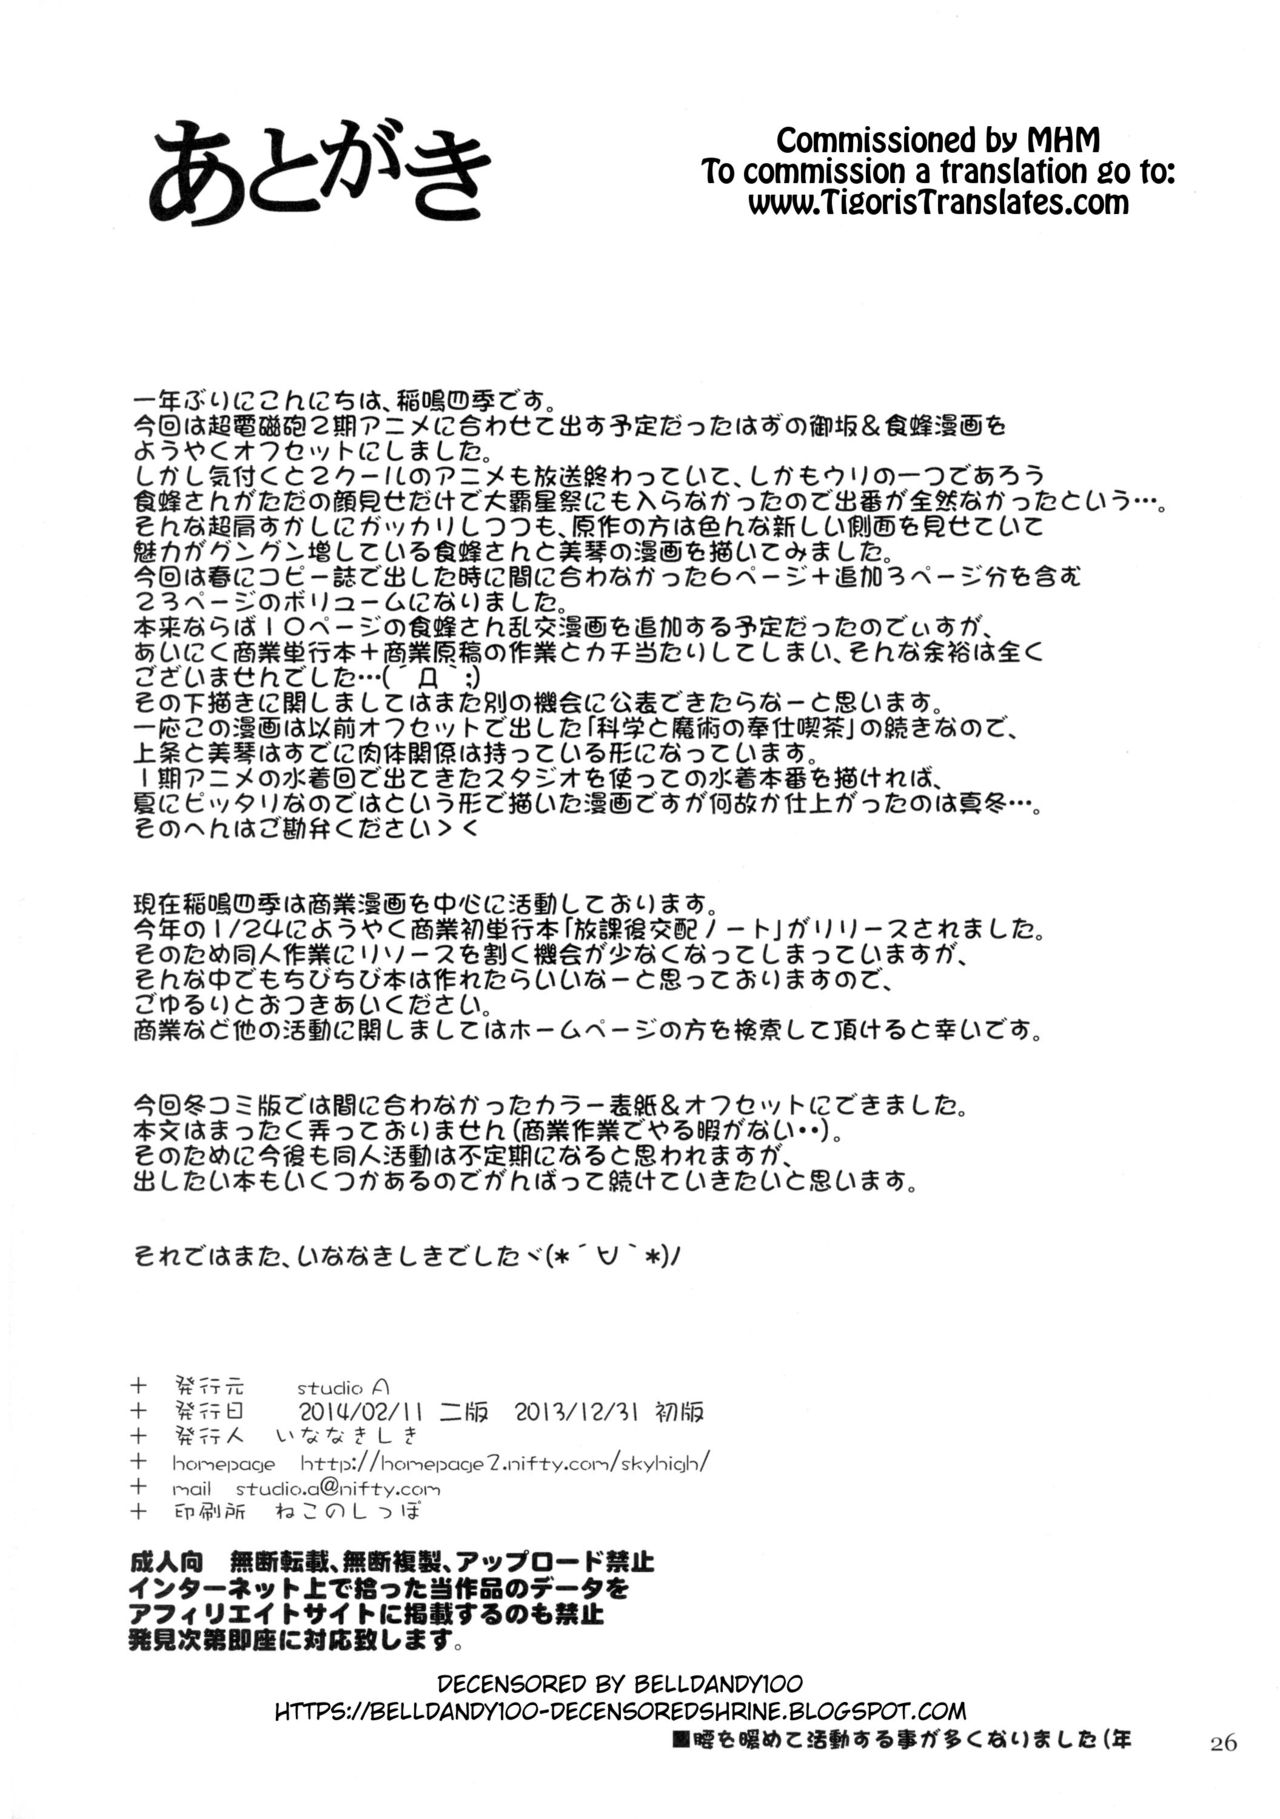 [studio A (Inanaki Shiki)] Misaka x Misaki (Toaru Kagaku no Railgun) [English] [Tigoris Translates] [Decensored] [2014-02-11] 25